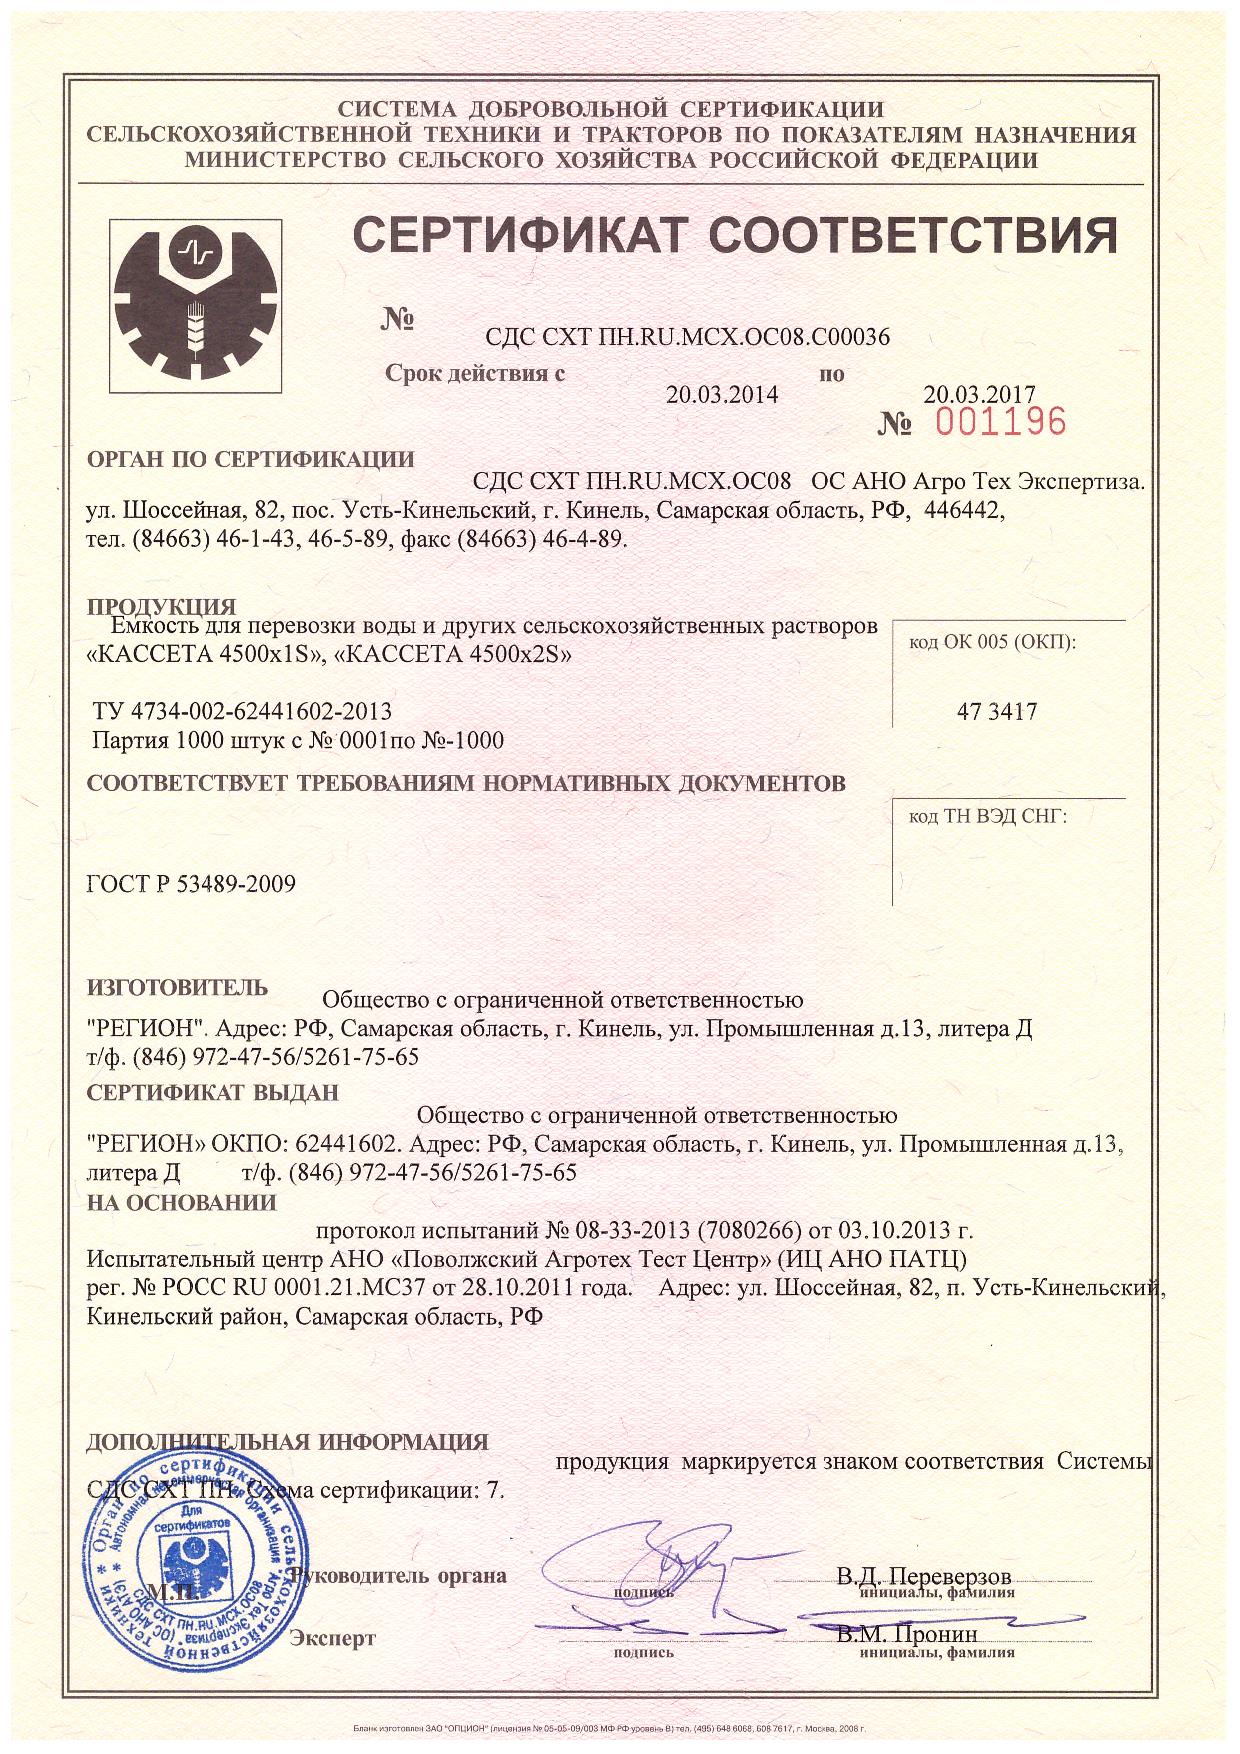 Сертификат соответствия "Кассета"